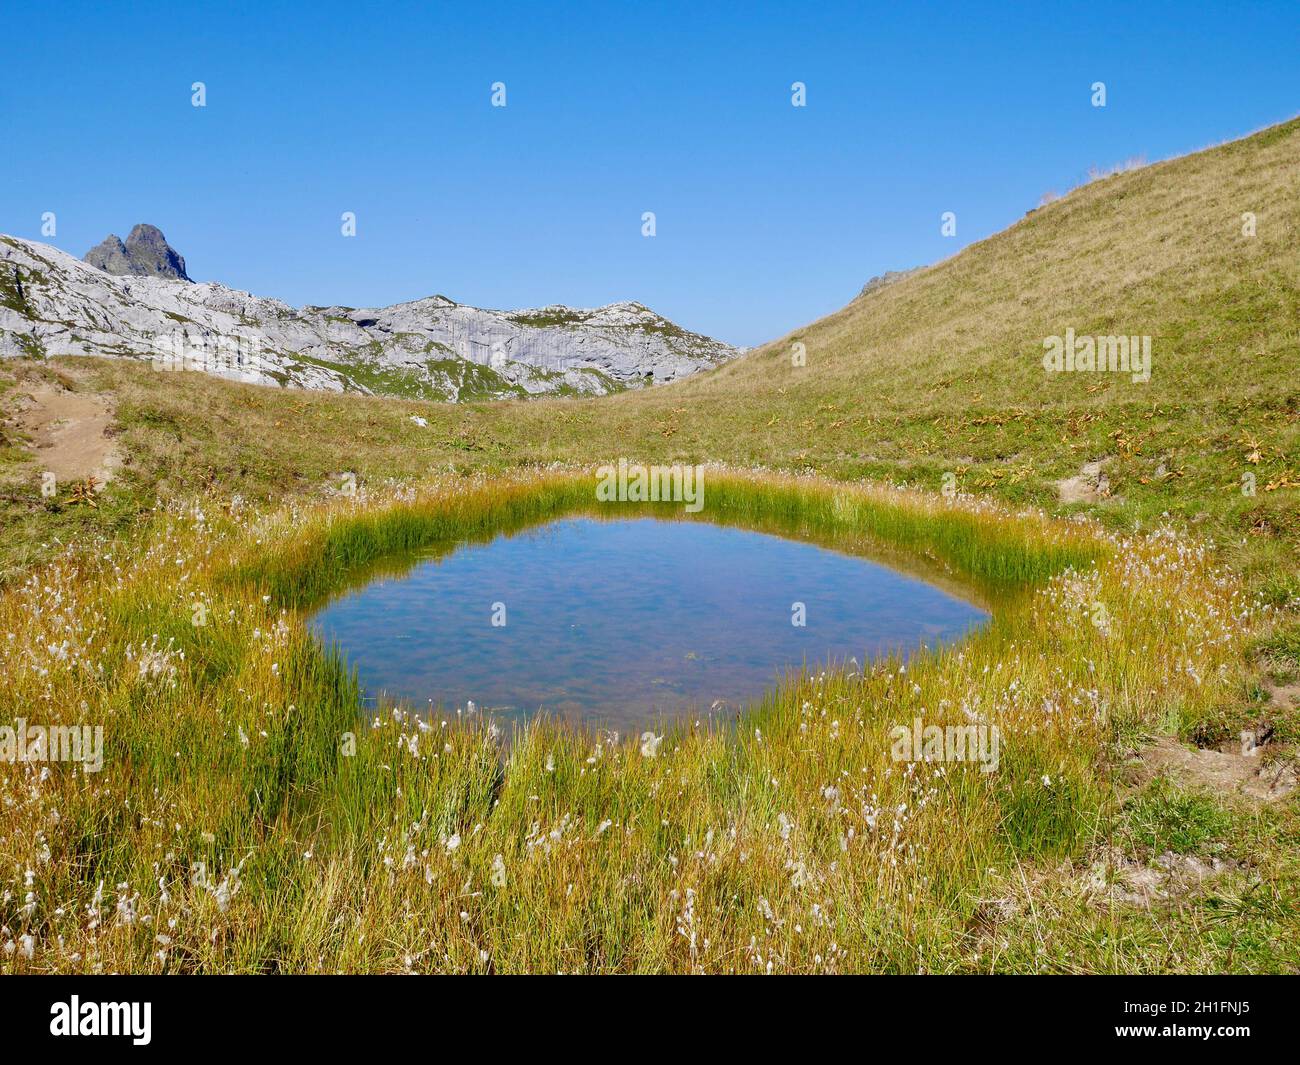 Pond in alpine landscape in Praettigau, Graubuenden, Switzerland. Stock Photo